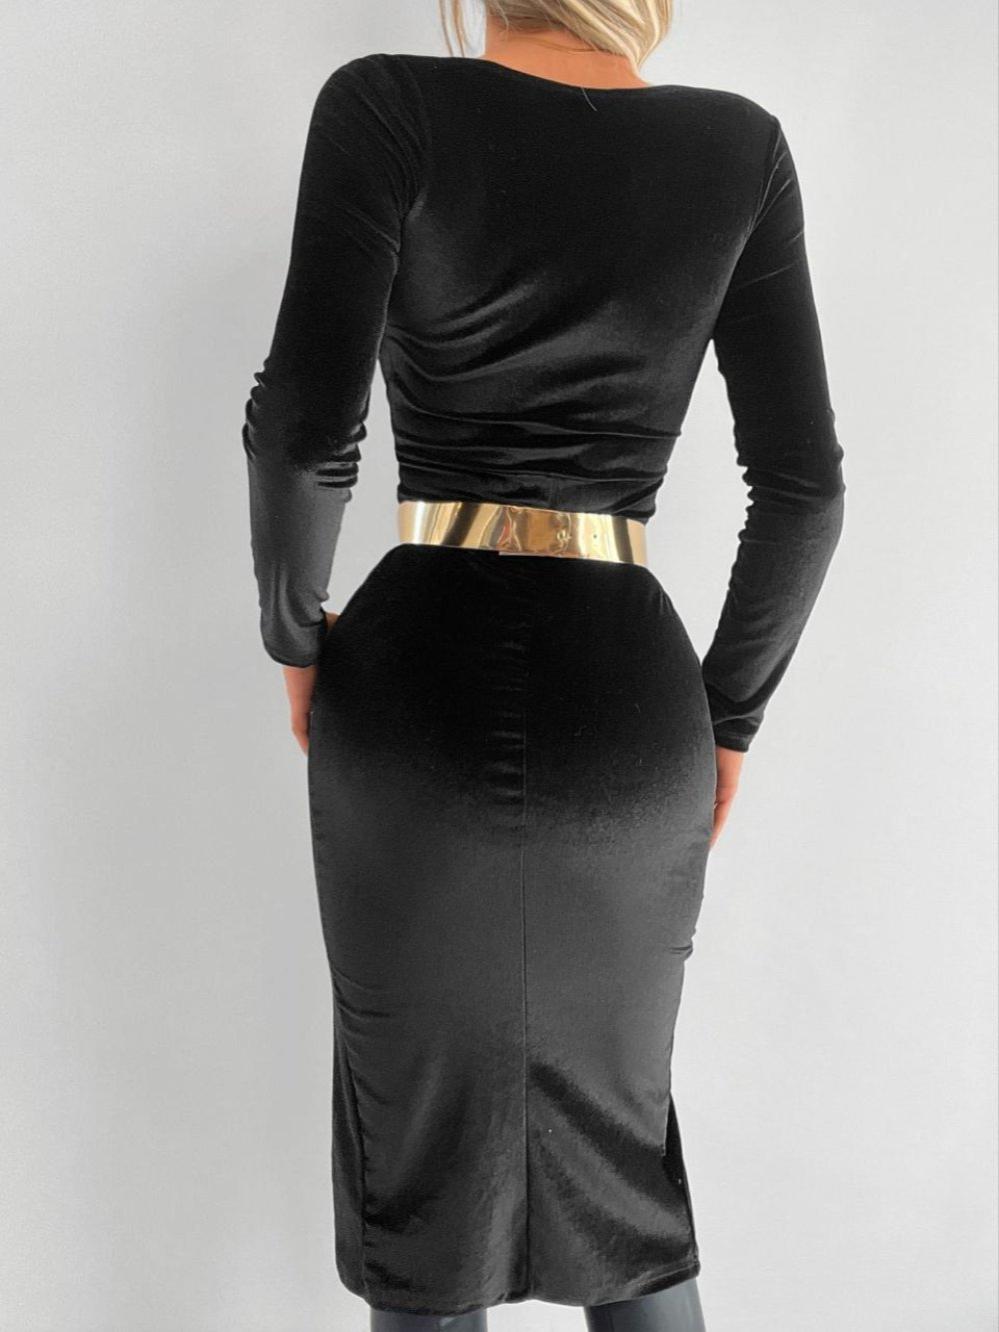 Fery Gold Kemer Detay Yırtmaçlı Kadife Elbise 581201 D-7 Siyah